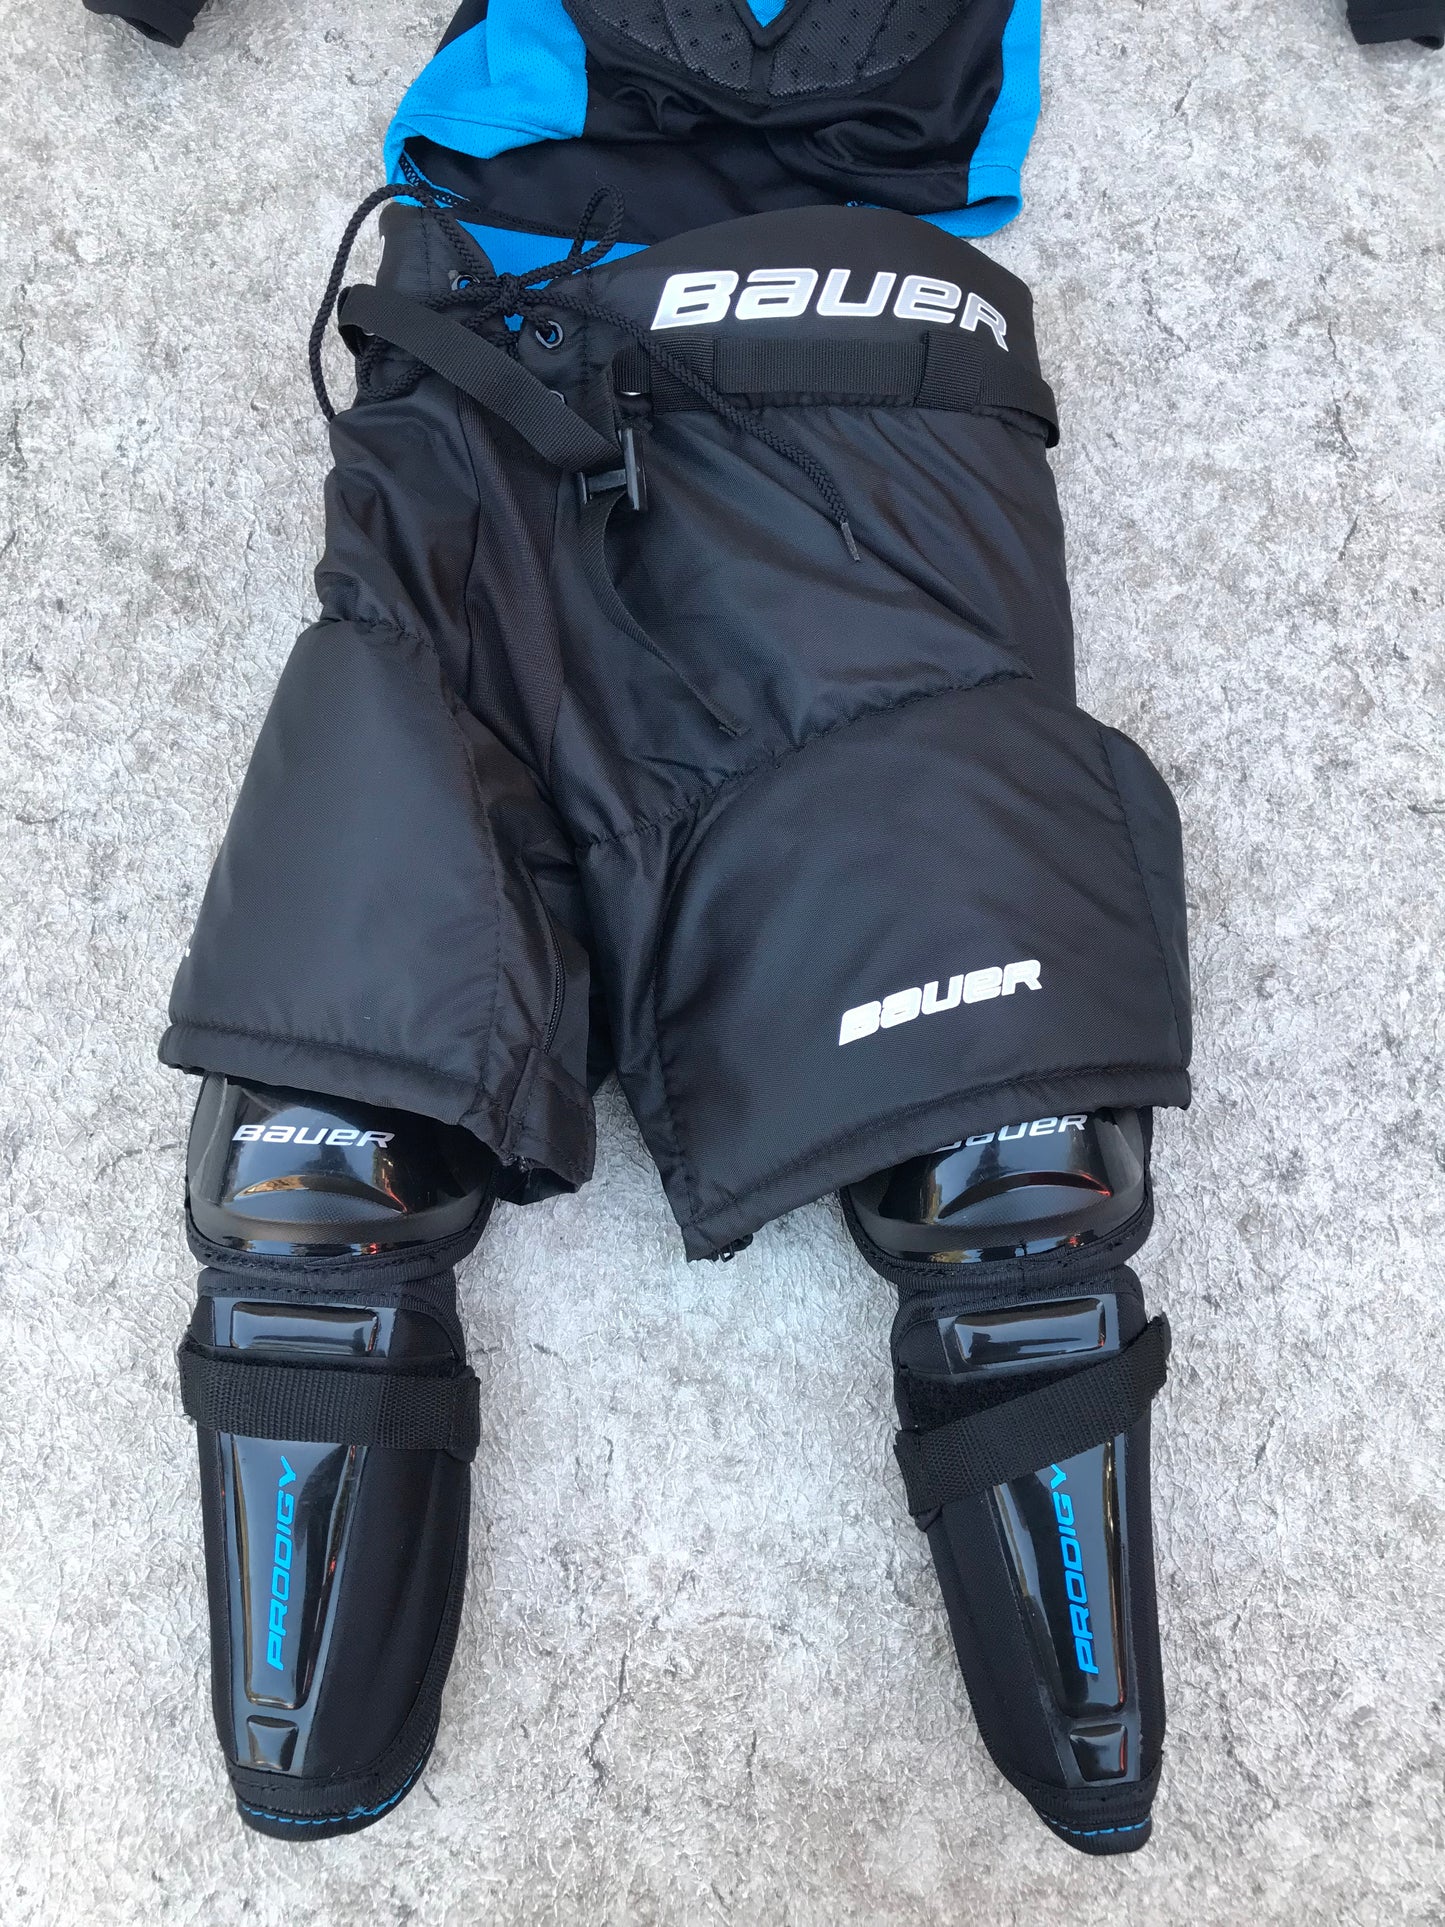 Hockey Child Full Kit Y Size Medium 5-6 Bauer Prodigy New Demo Model